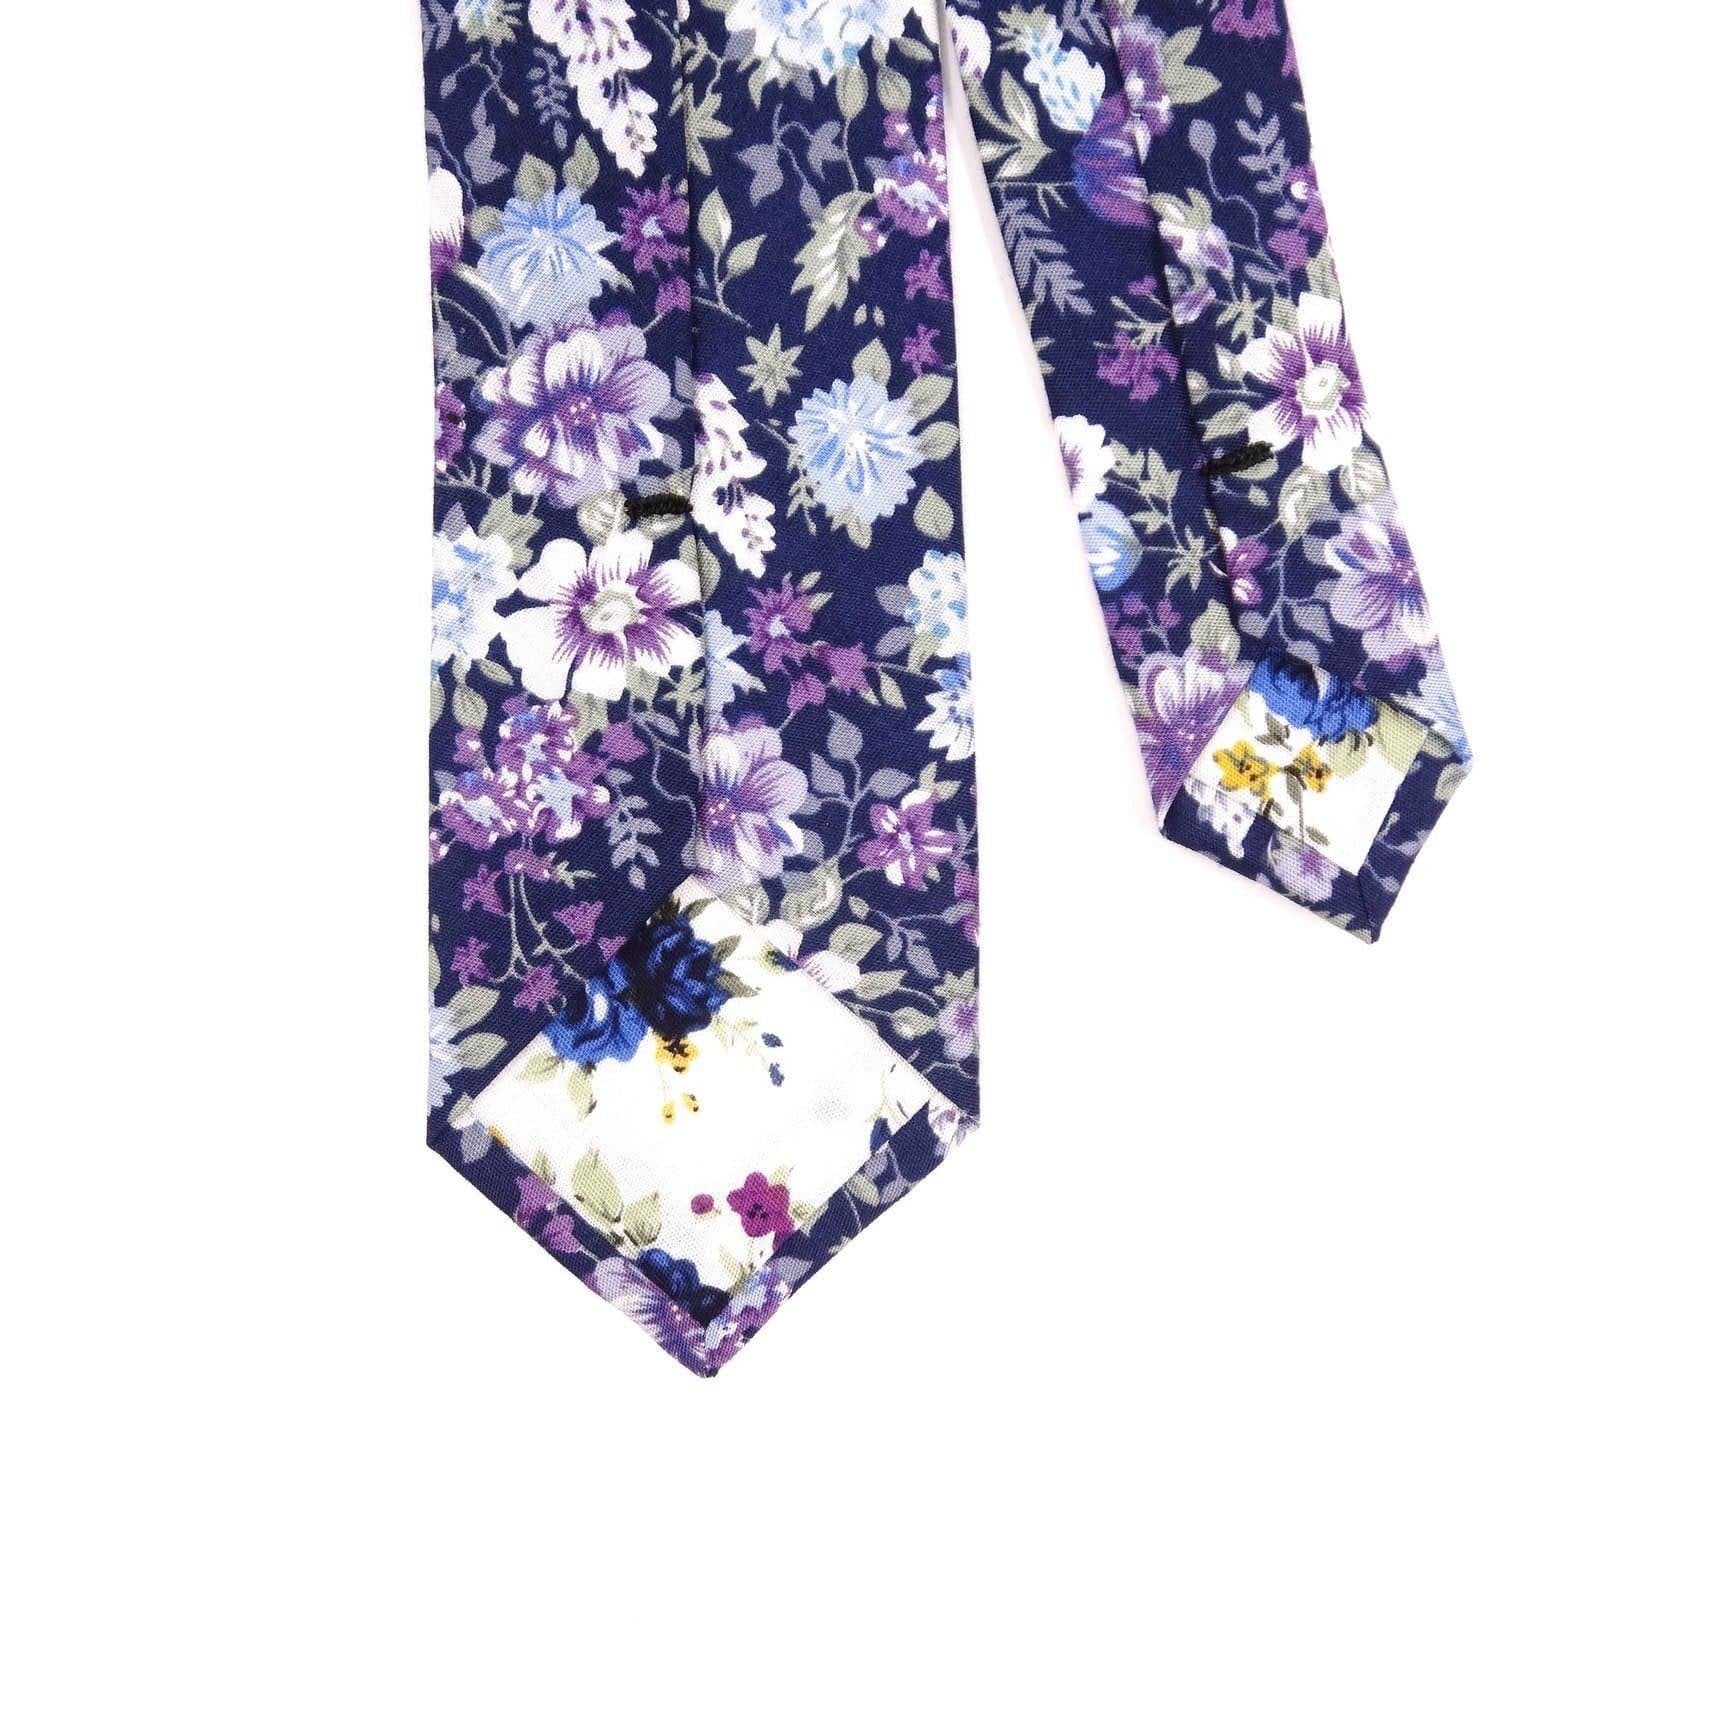 Purple floral tie men 2.36" SWEET PEA - MYTIESHOP -Neckties-Purple floral tie men Men’s Floral Necktie for